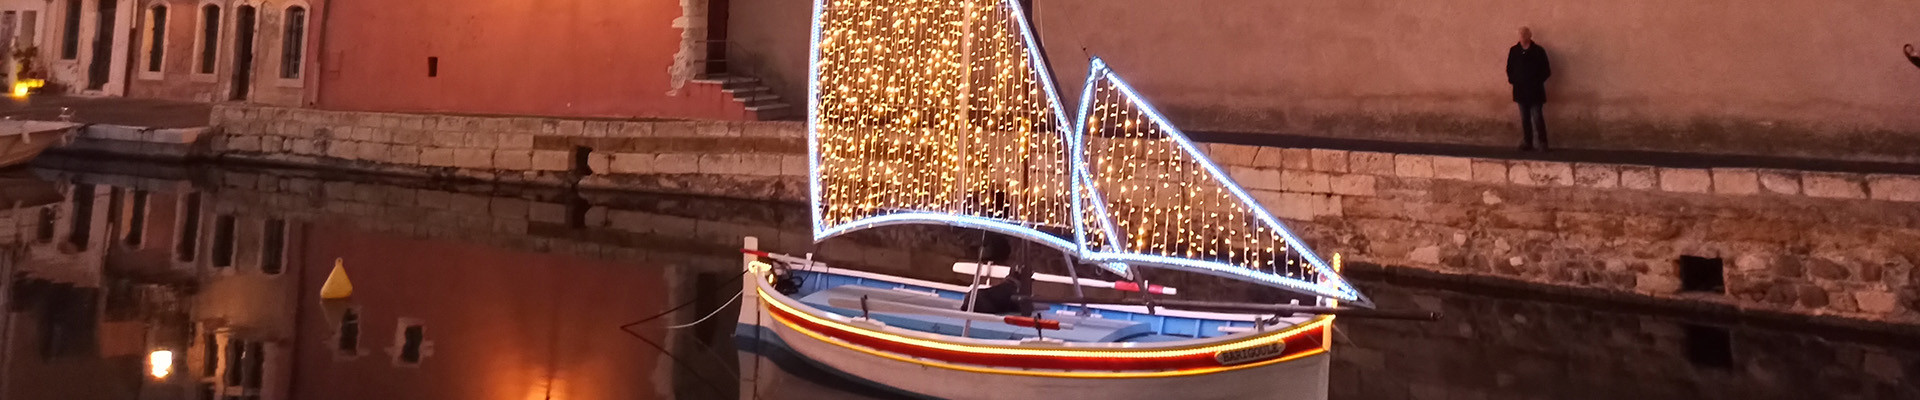 Noël à Martigues